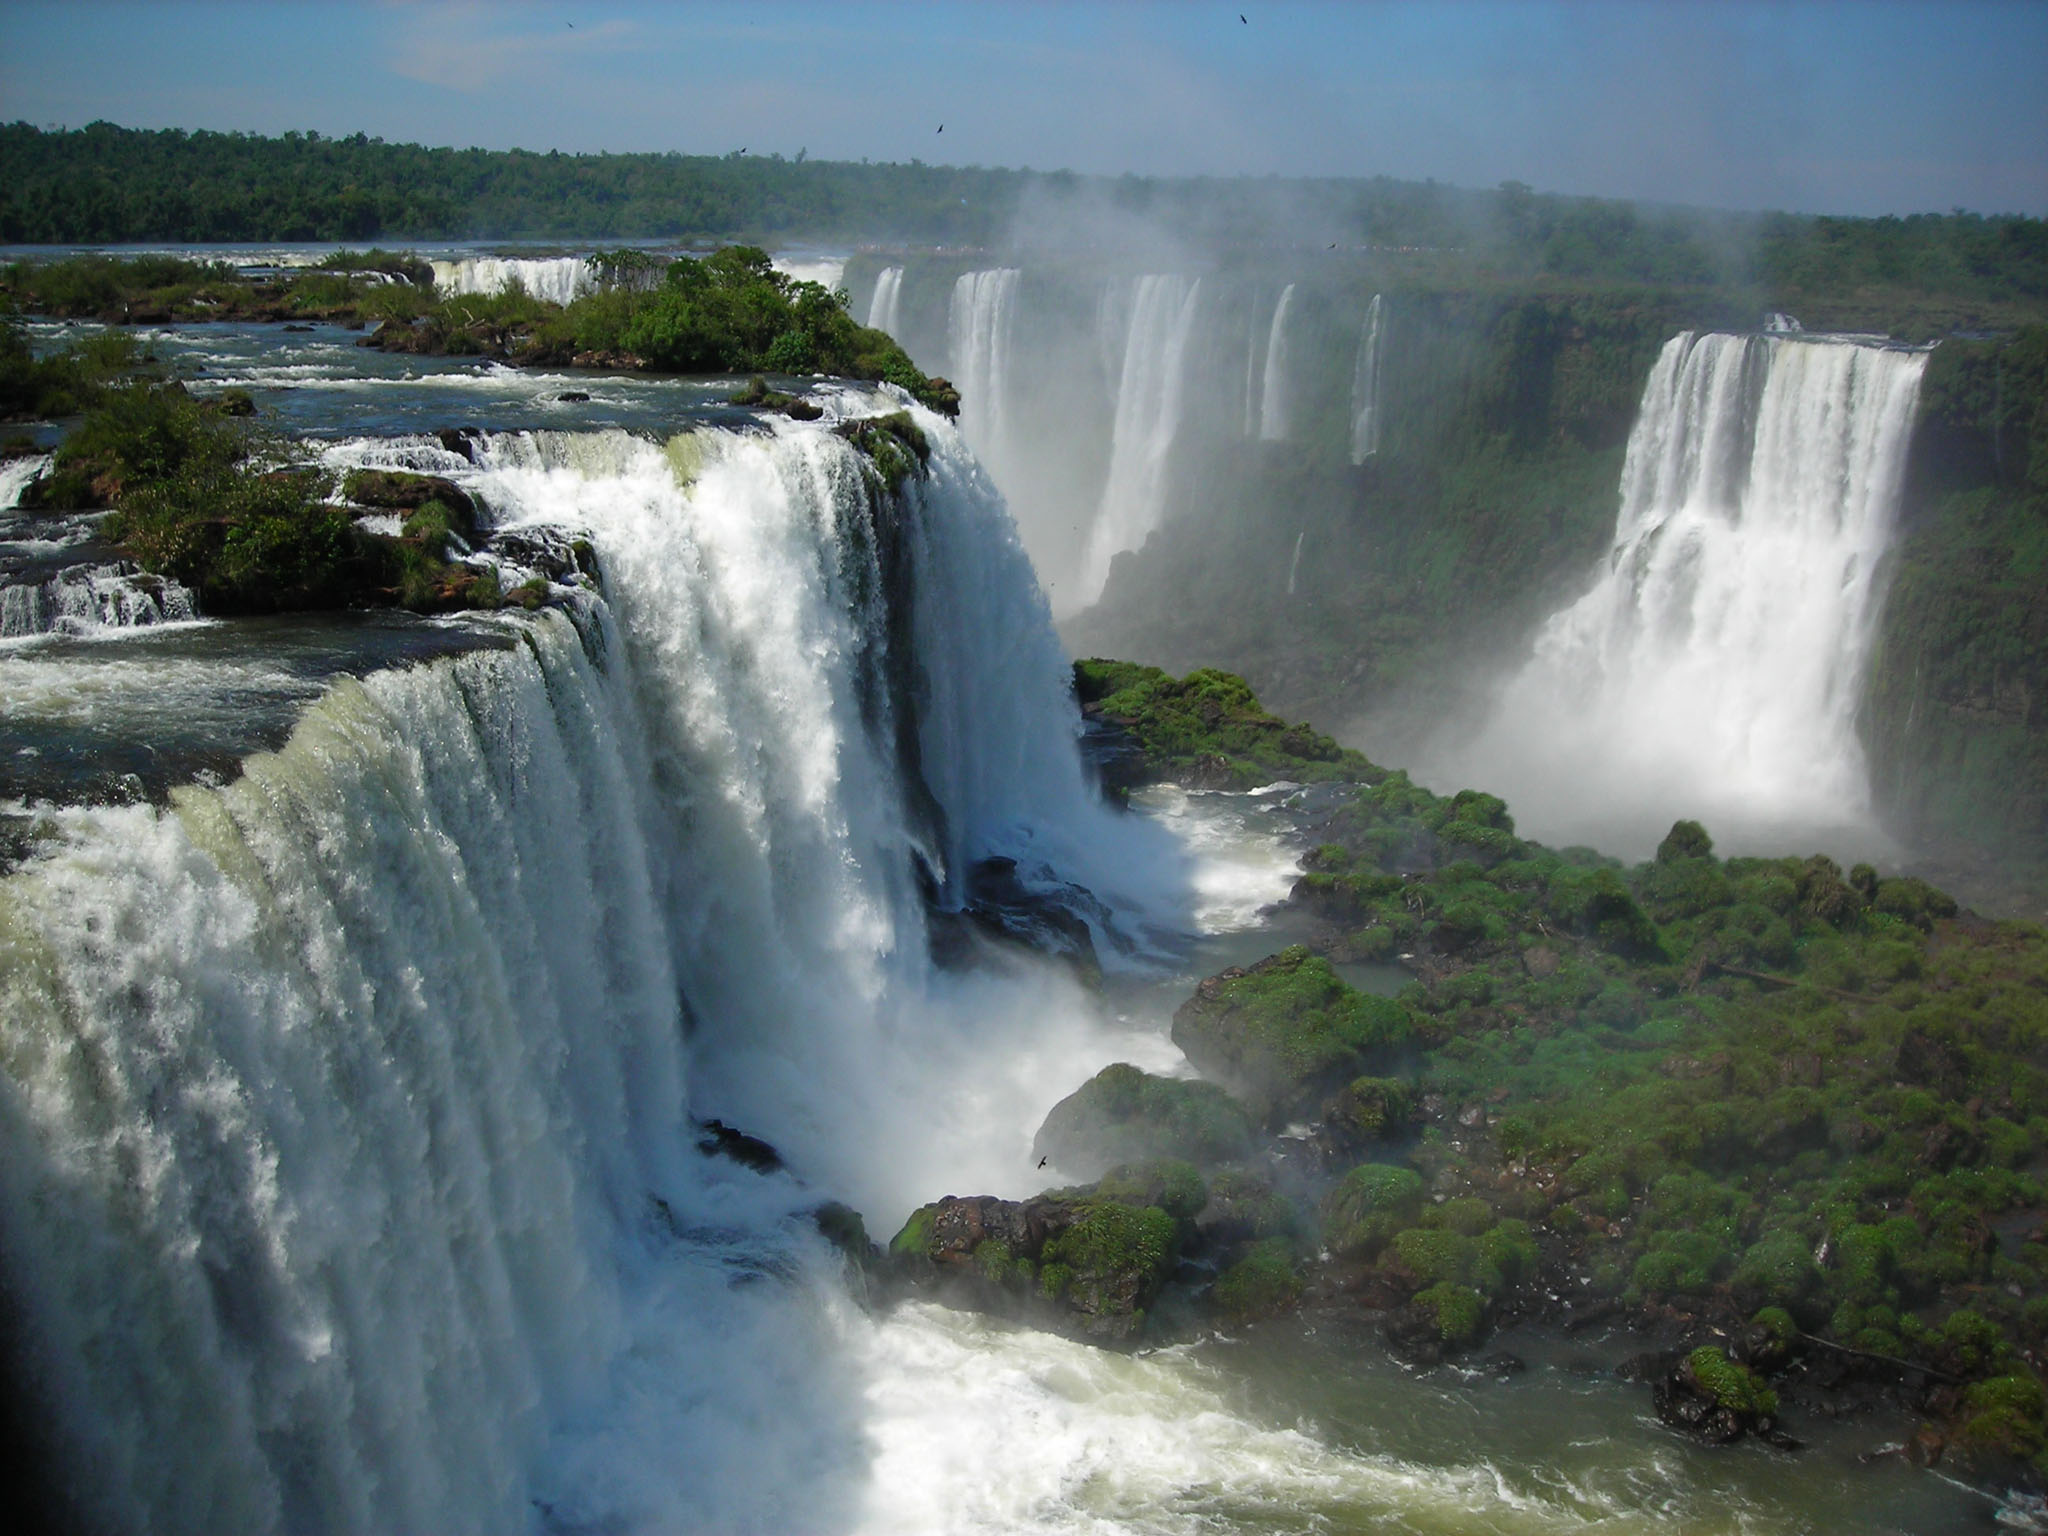 les chutes spectaculaires de l’Iguaçu, à la frontière du Brésil, de l’Argentine et du Paraguay